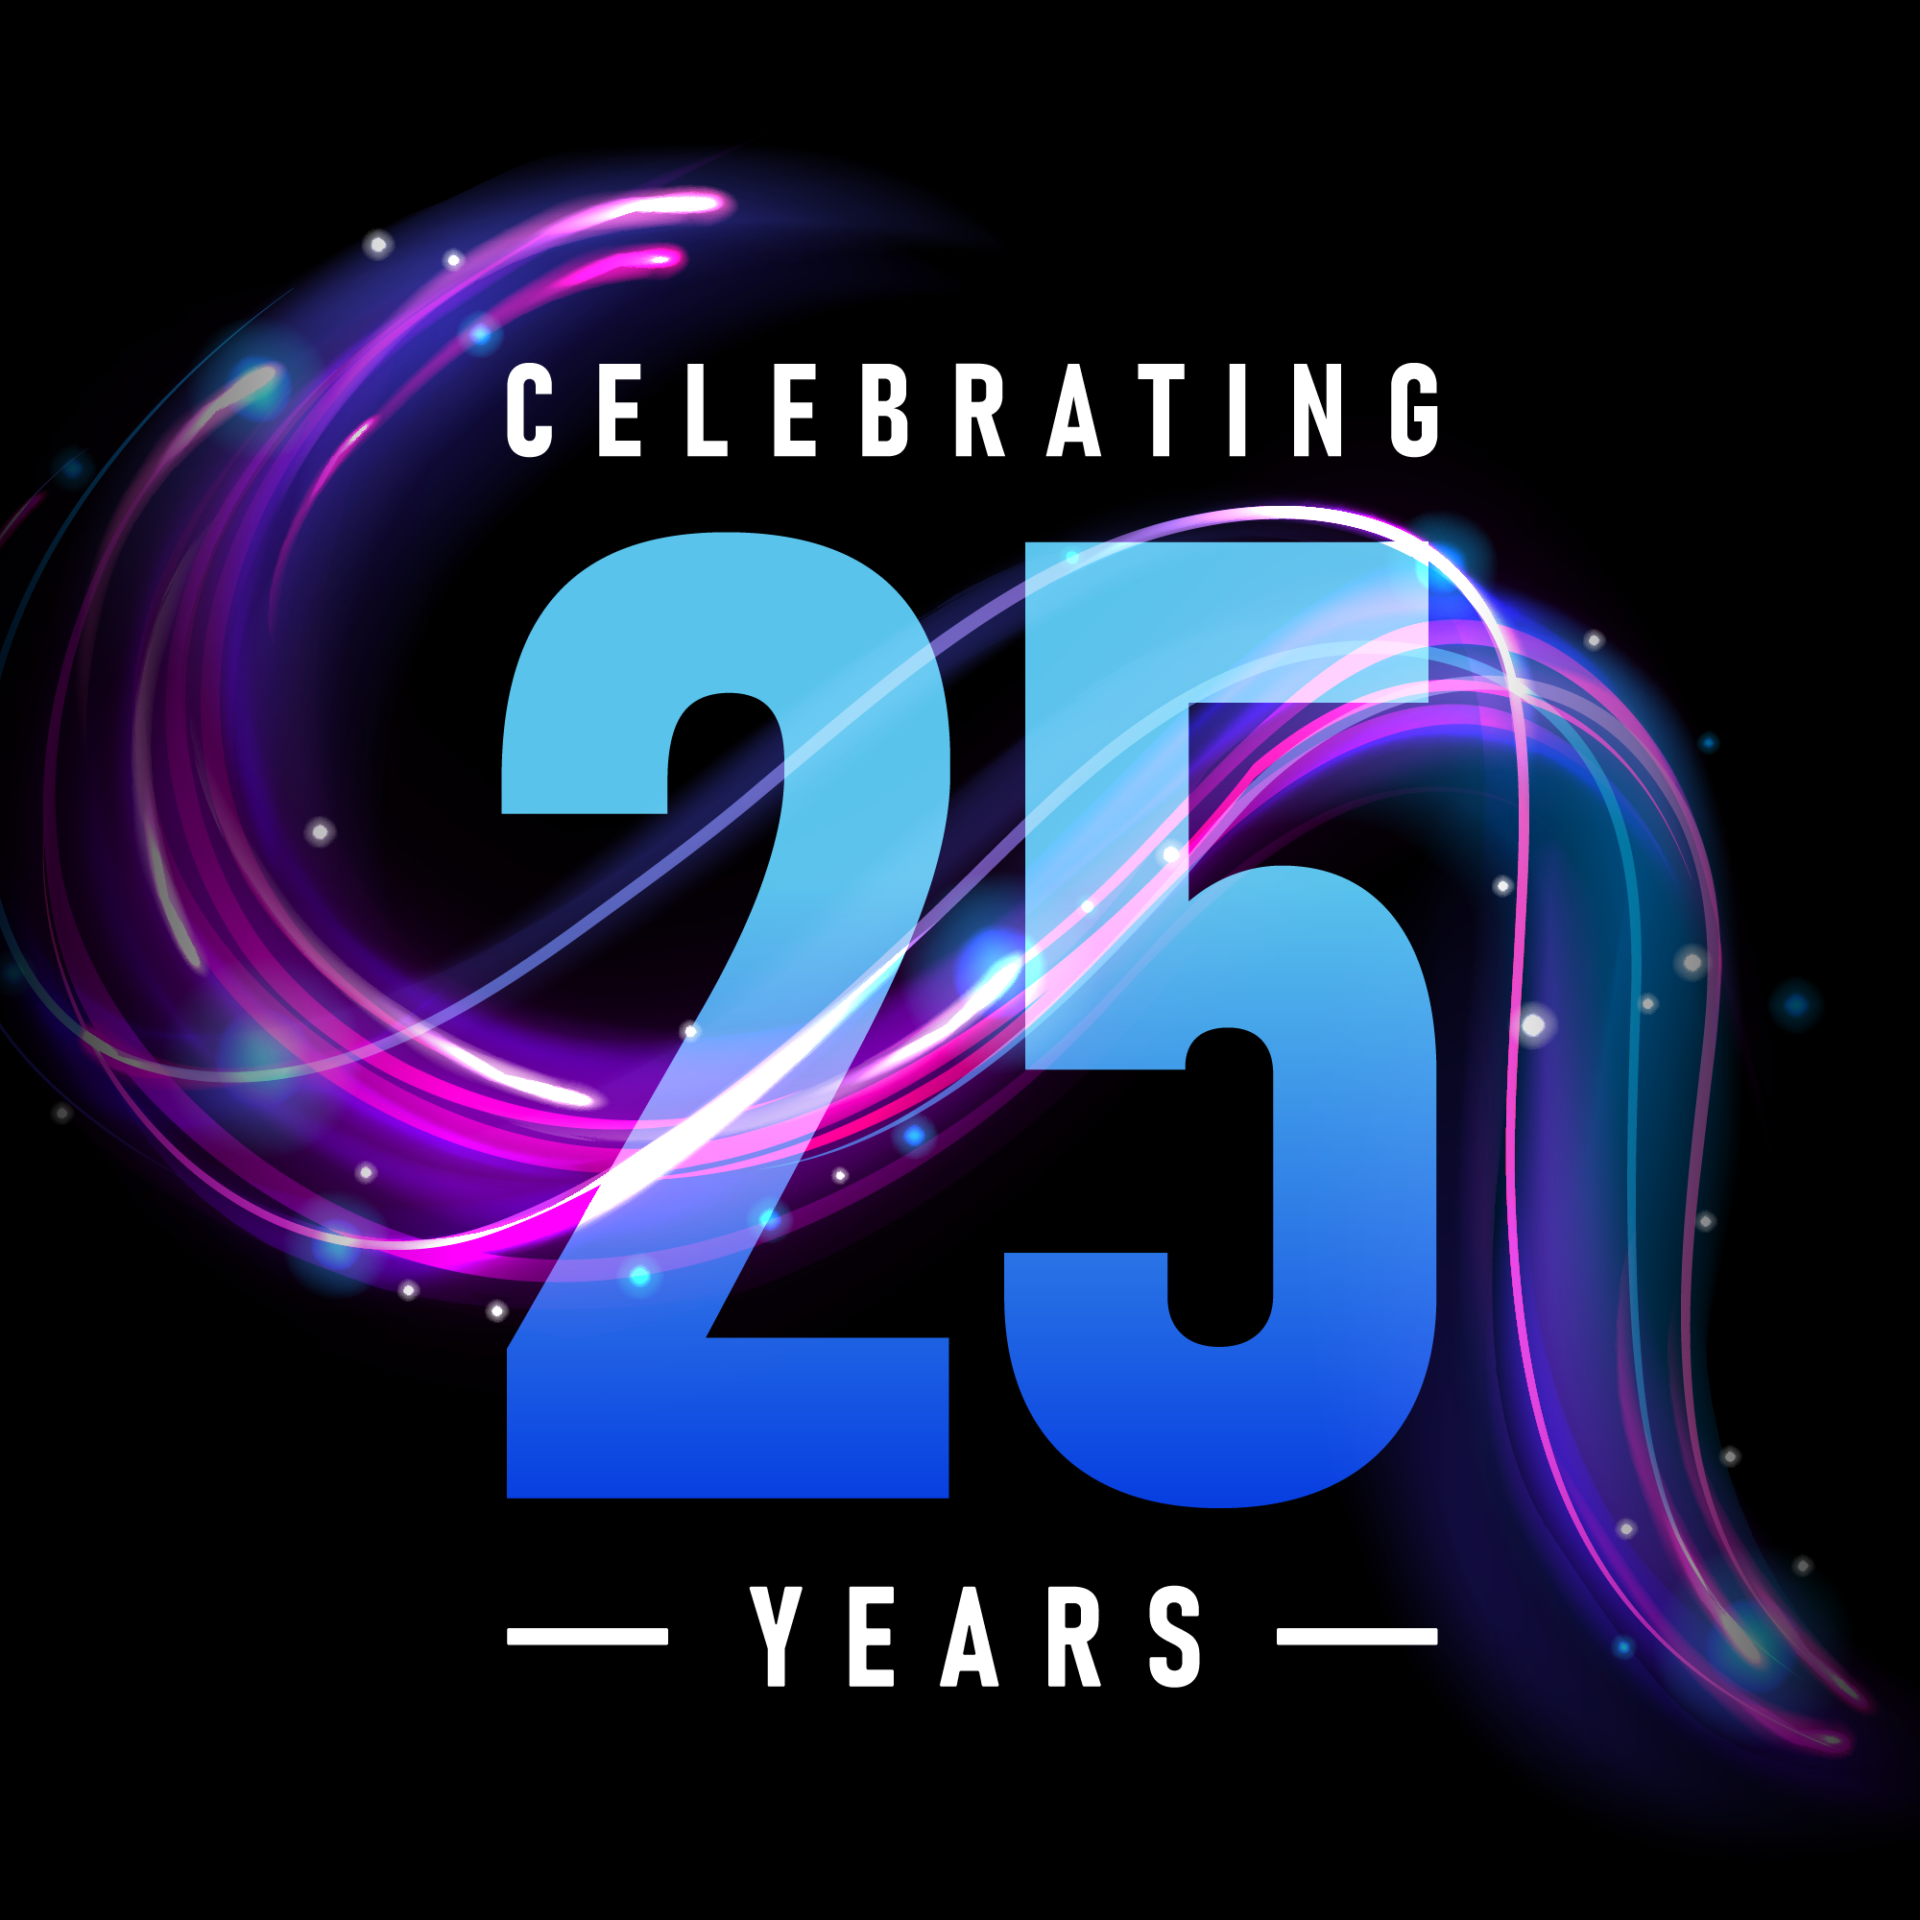 25th Anniversary Icon